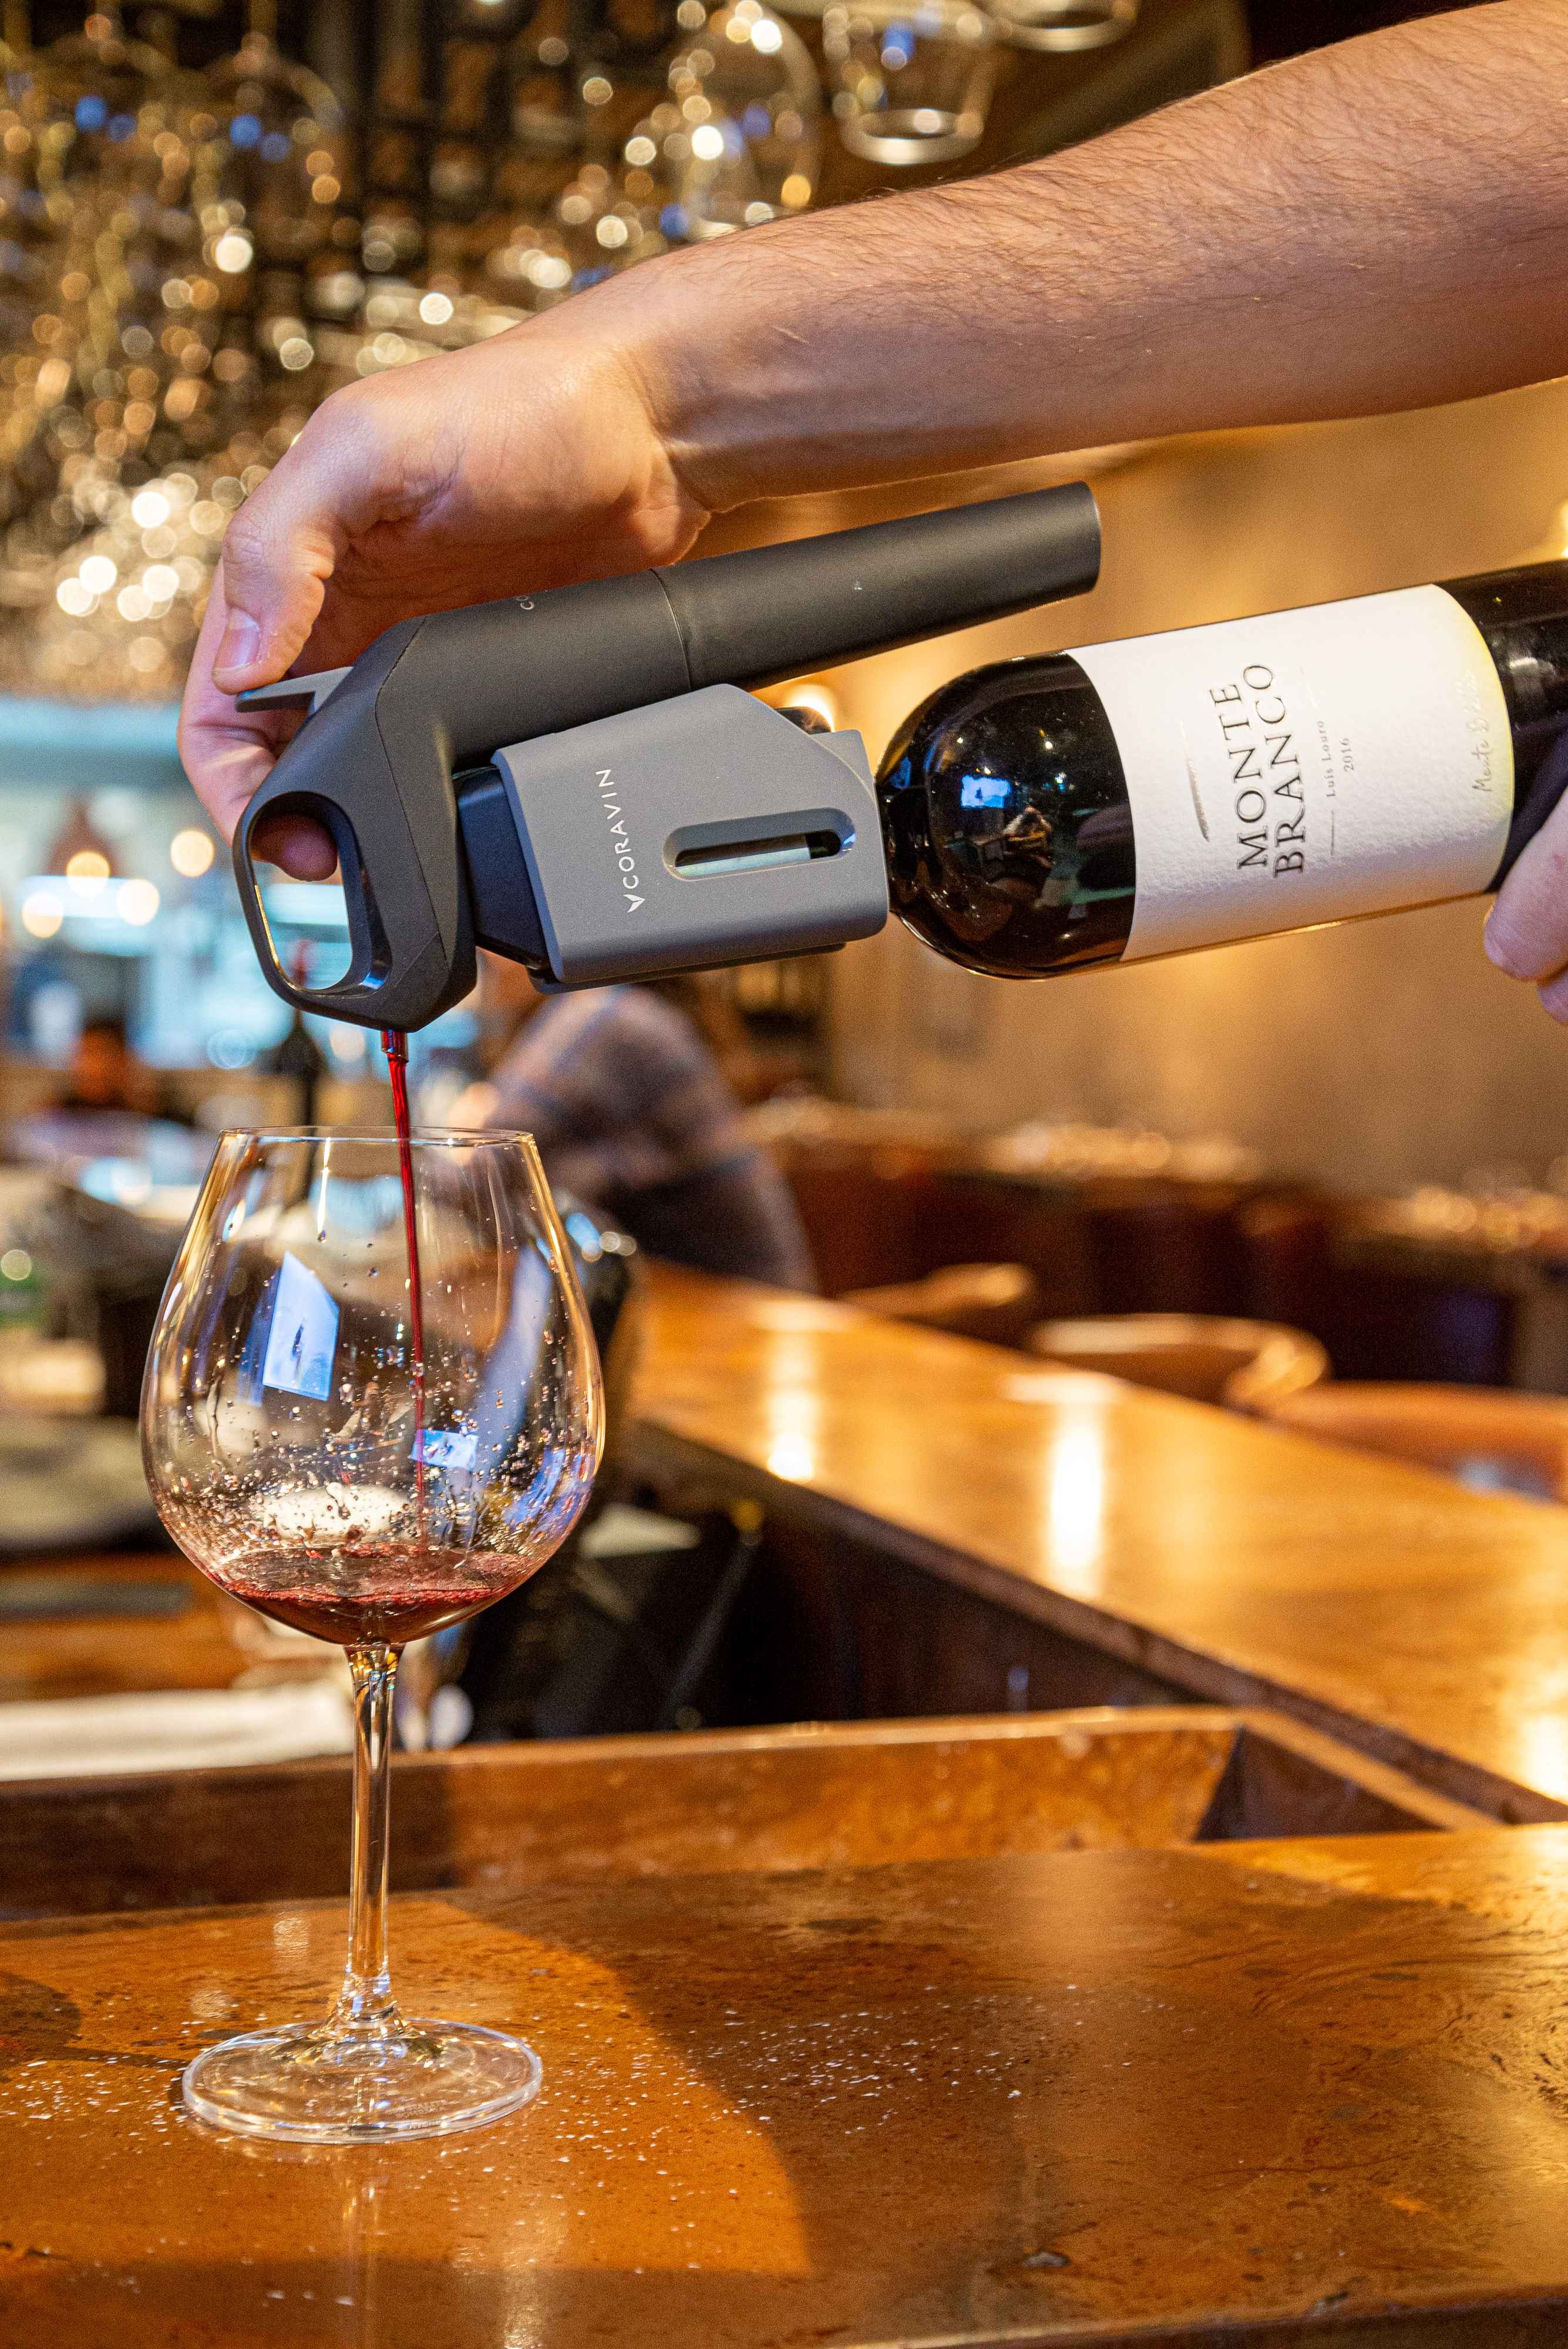 Os clientes podem degustar os vinhos em taças e comprá-los na loja anexa ao bar (Foto: Divulgação)